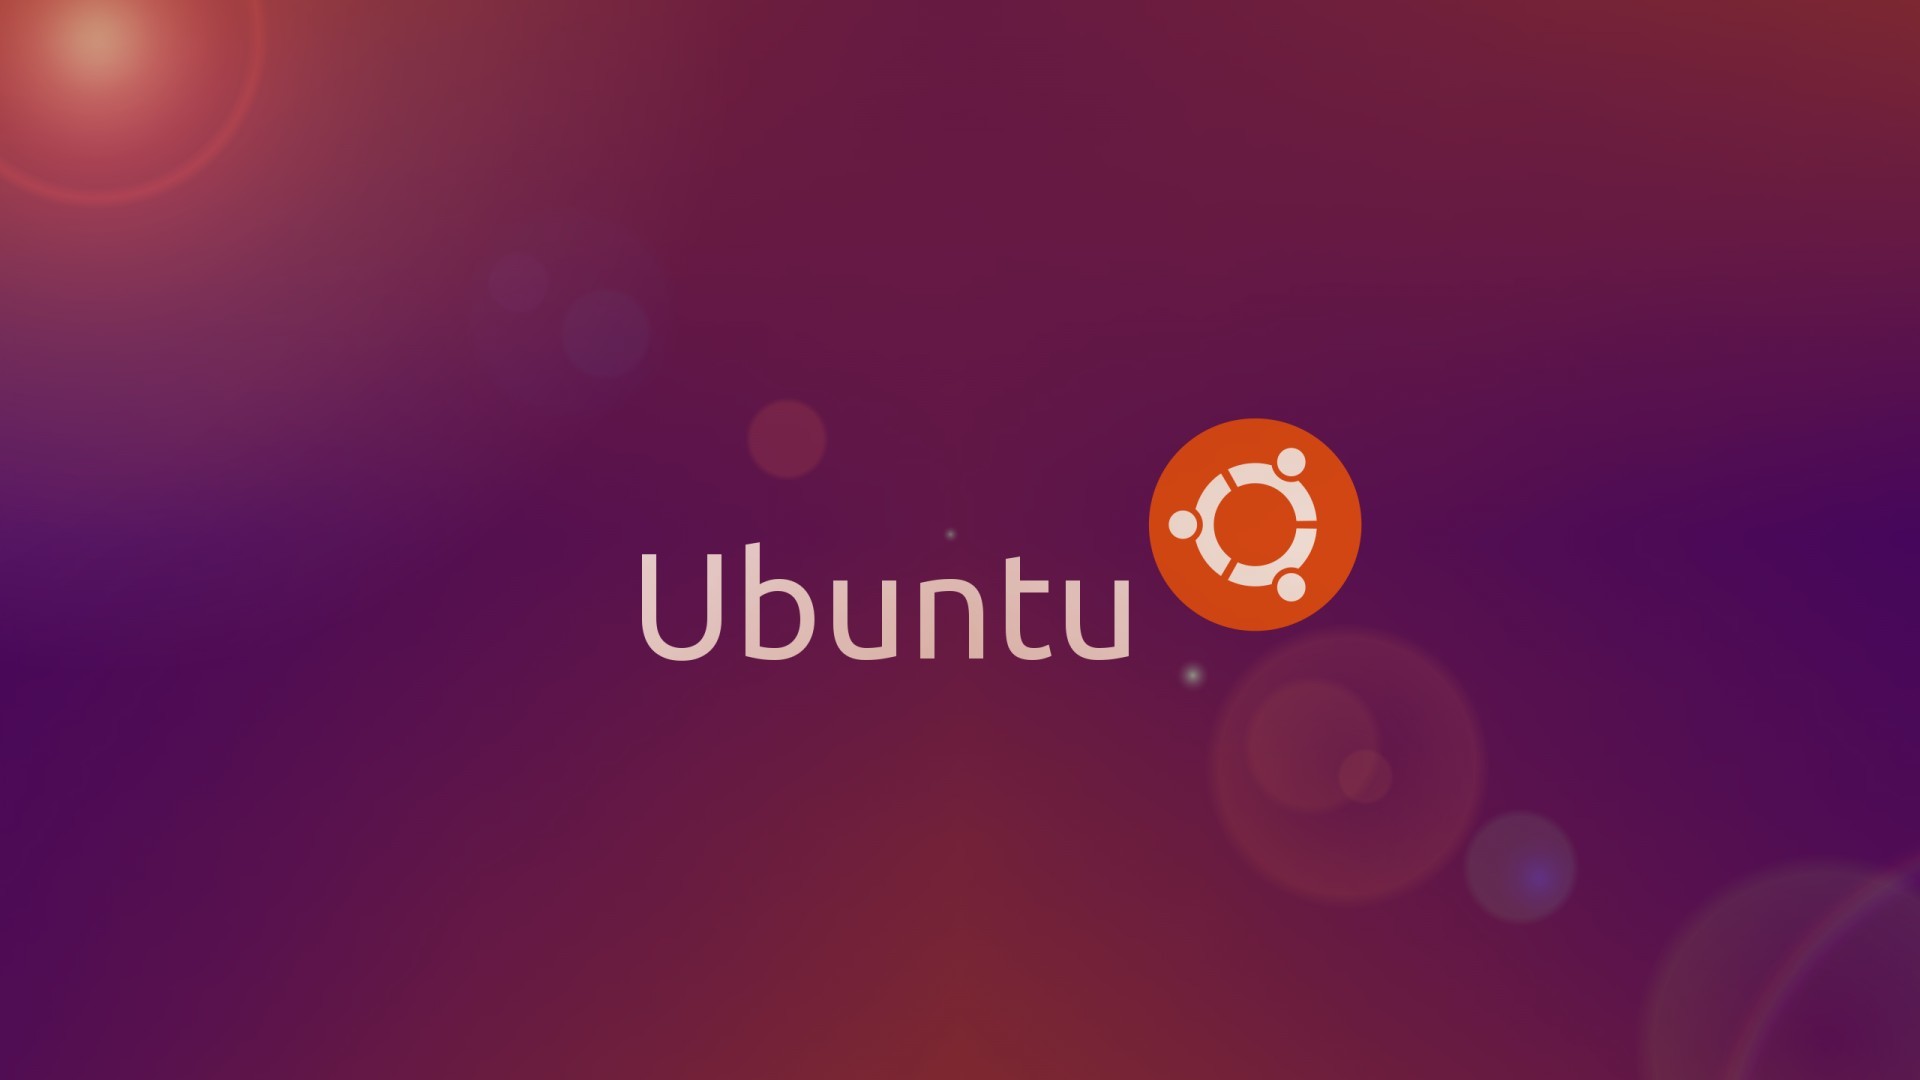 ubuntuの壁紙ダウンロード,テキスト,フォント,オレンジ,バイオレット,空